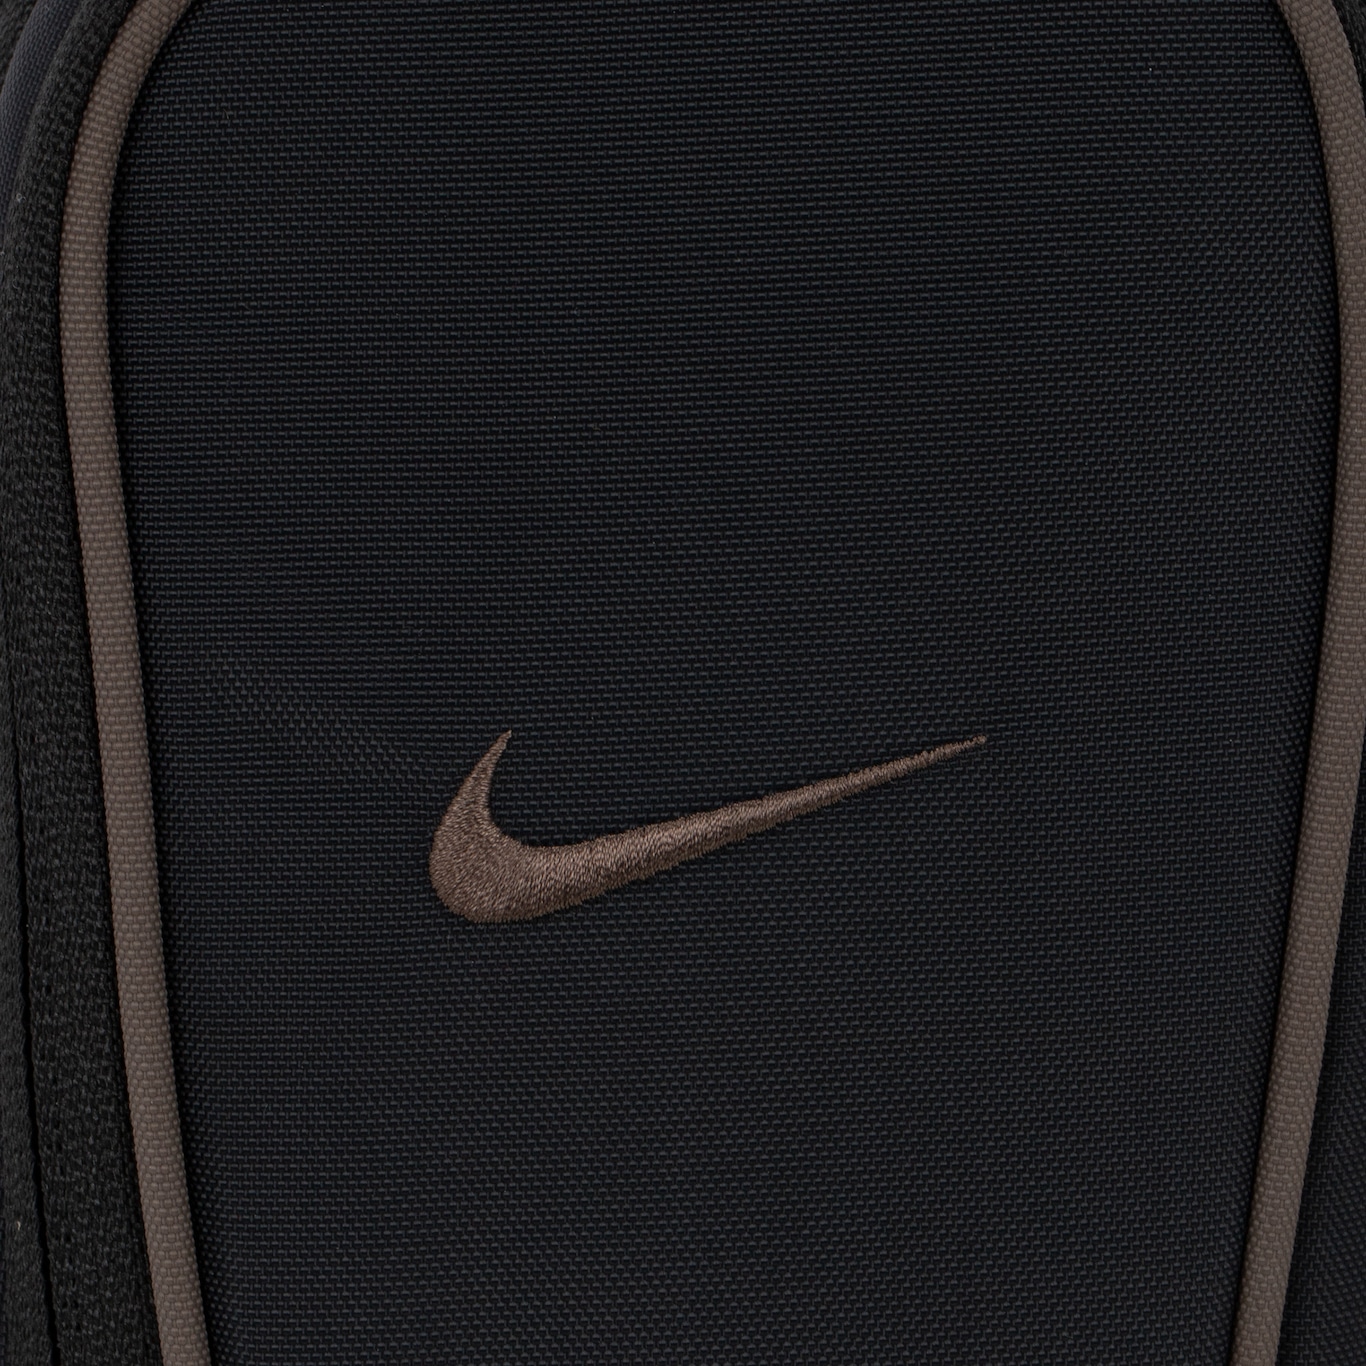 Bolsa Nike Sportwear Essentials Crossbody - Foto 3